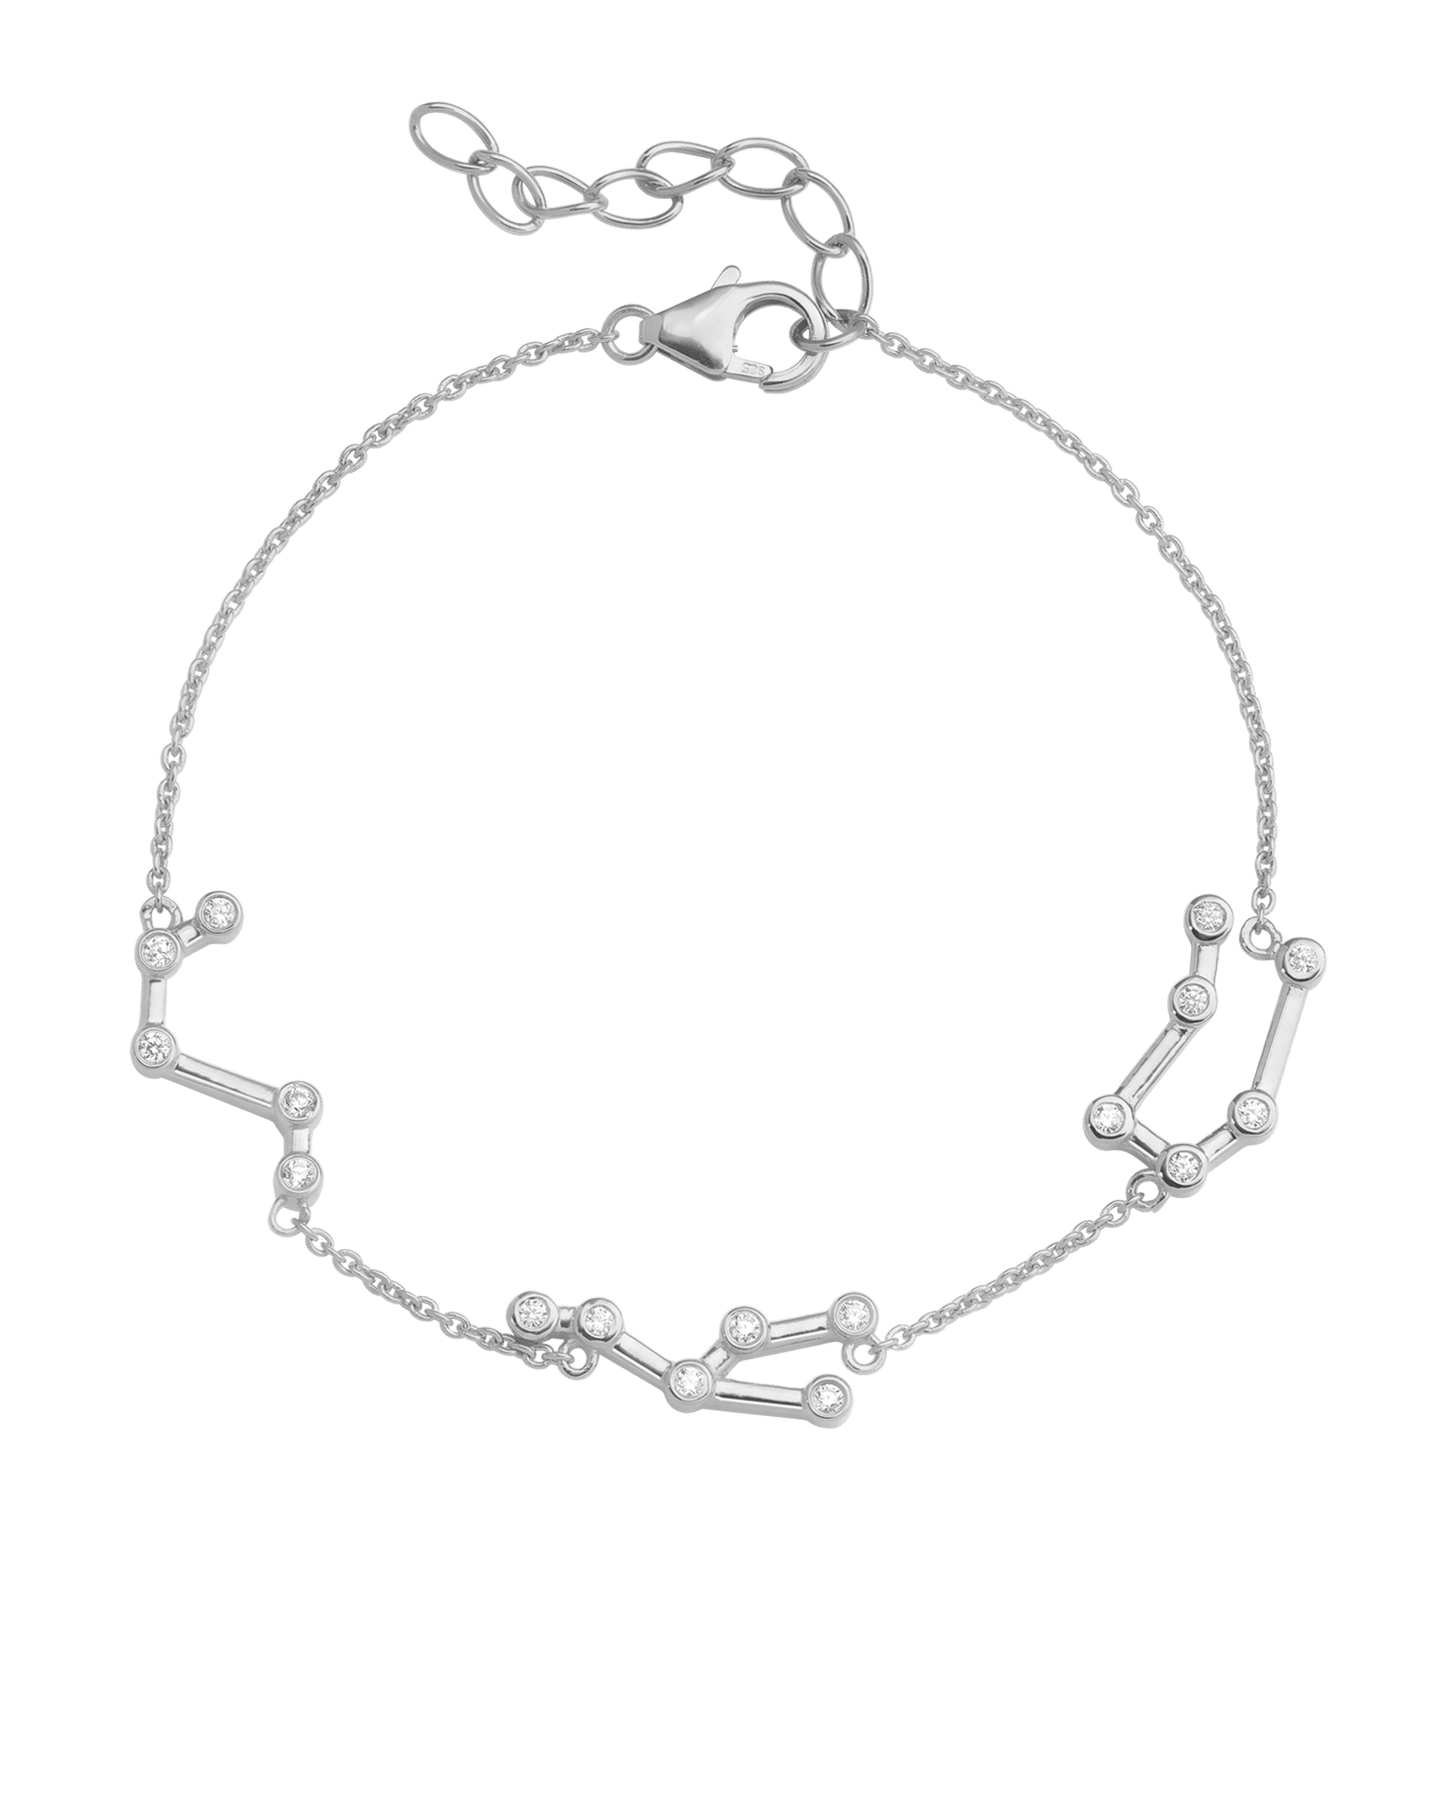 Constellation Bracelet - 925 Sterling Silver Bracelets magal-dev 1 Constellation 6" + 1" Extender 